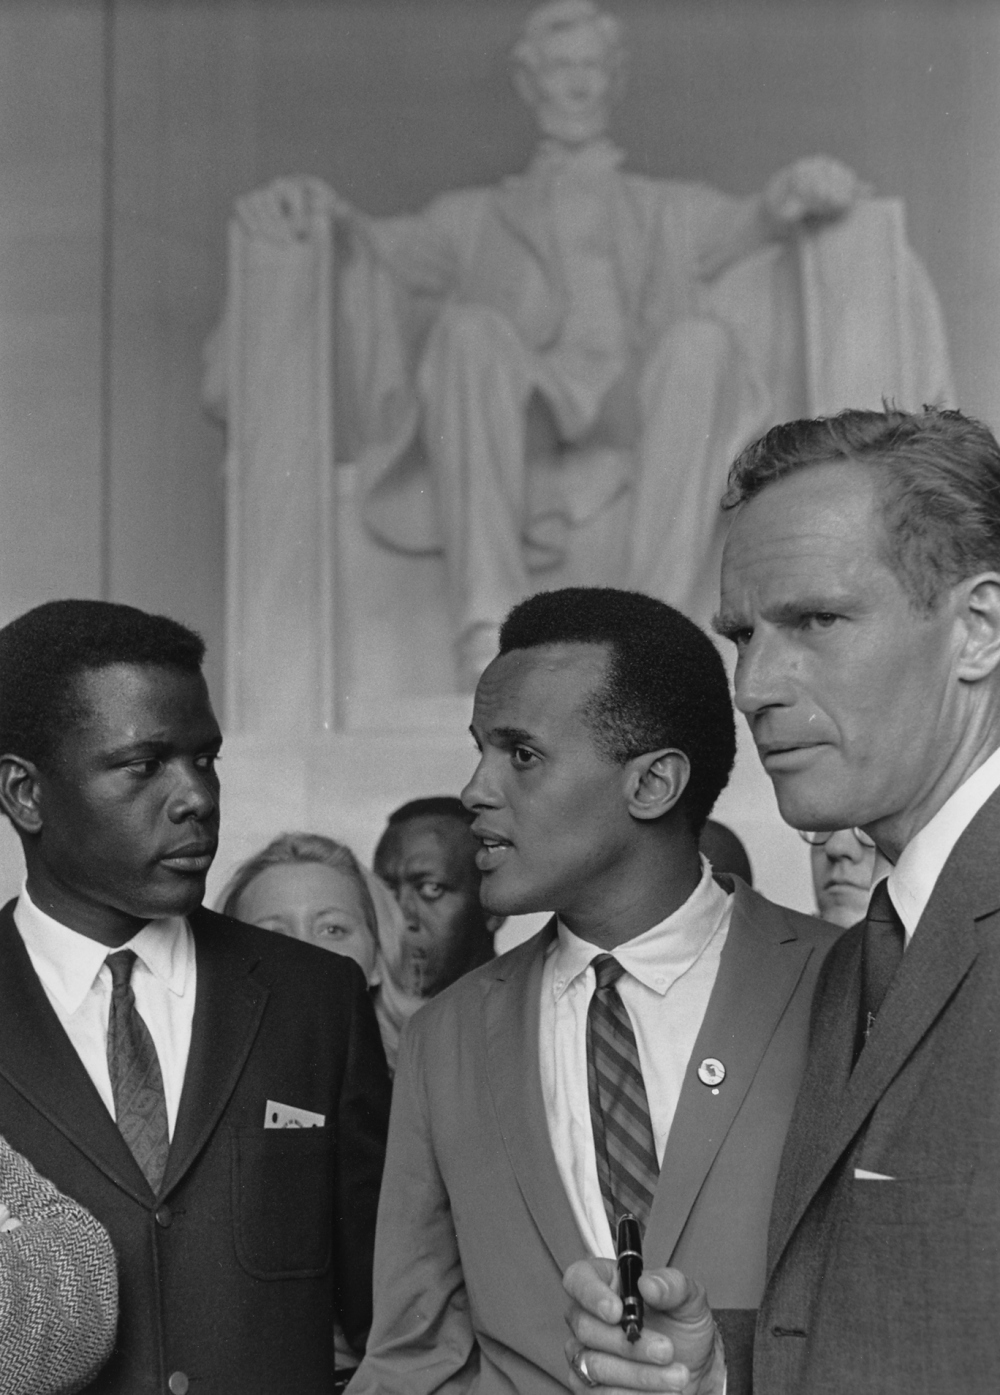 Sidney Poitier 1963 March on Washington